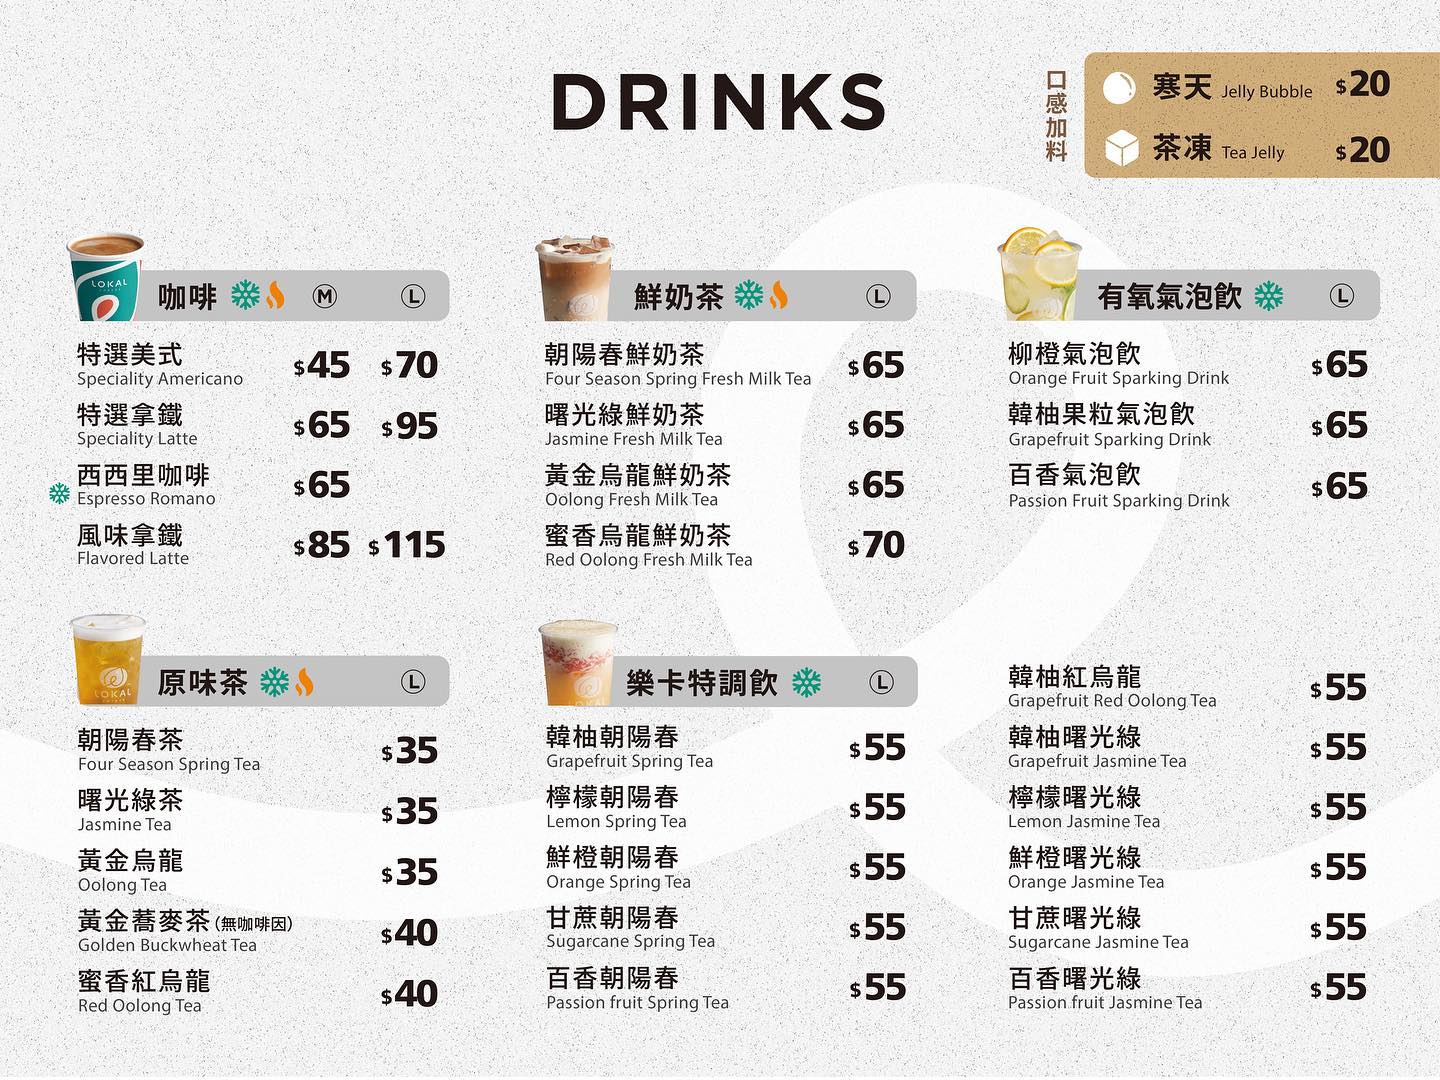 台南輕食︱樂卡咖啡 台南店 Lokal Coffee：吃原型食物，吃健康、吃美味、吃飽飽，附菜單